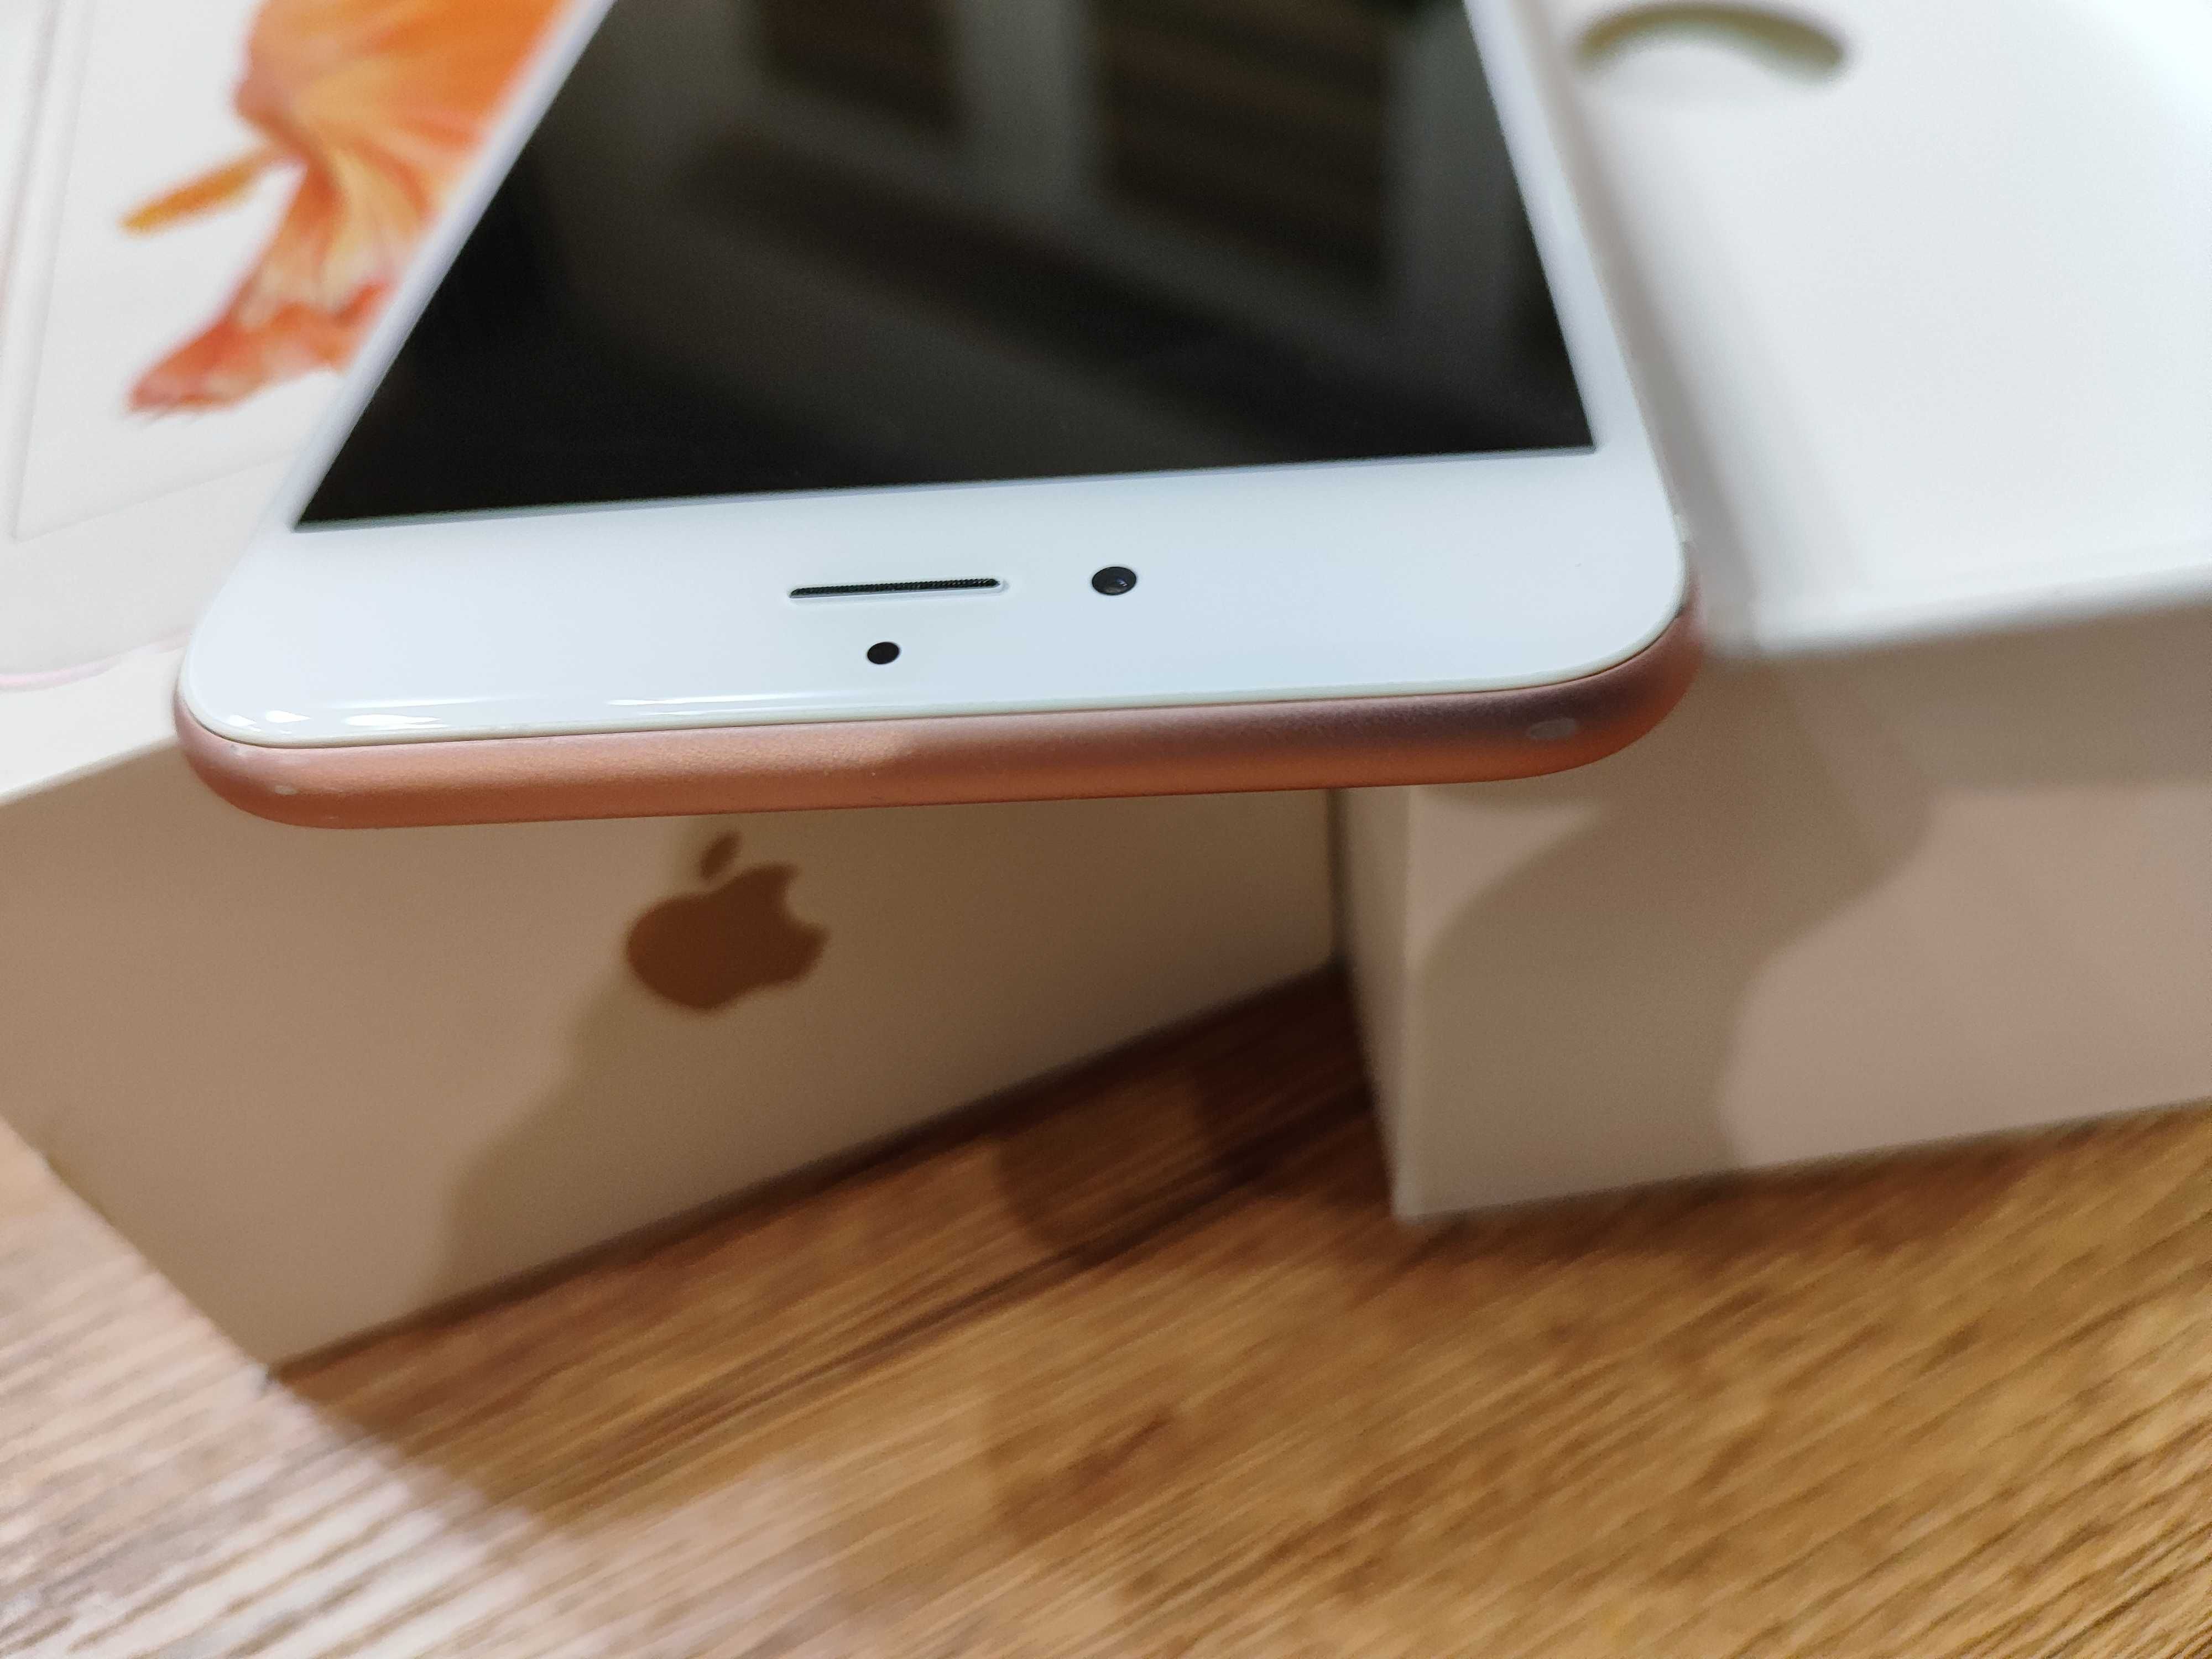 Apple iPhone 6S Plus 64GB Rose Gold